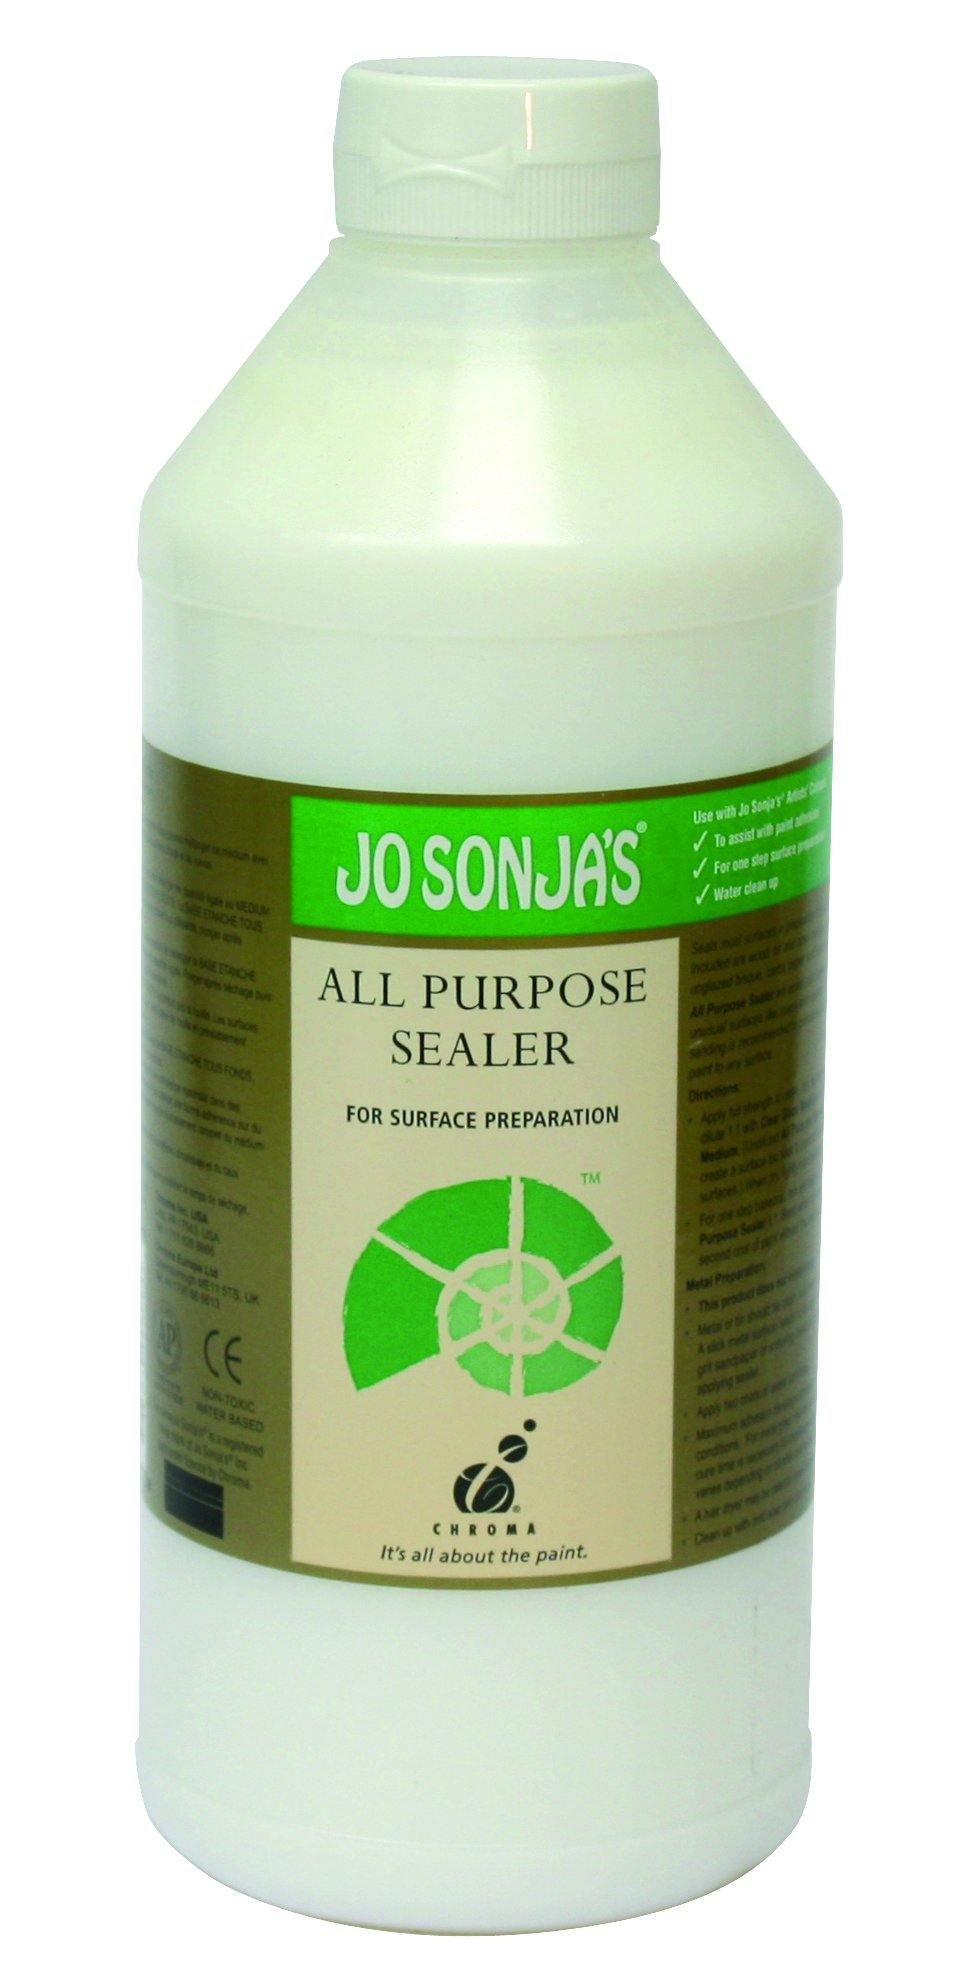 All Purpose Sealer – Jo Sonja's